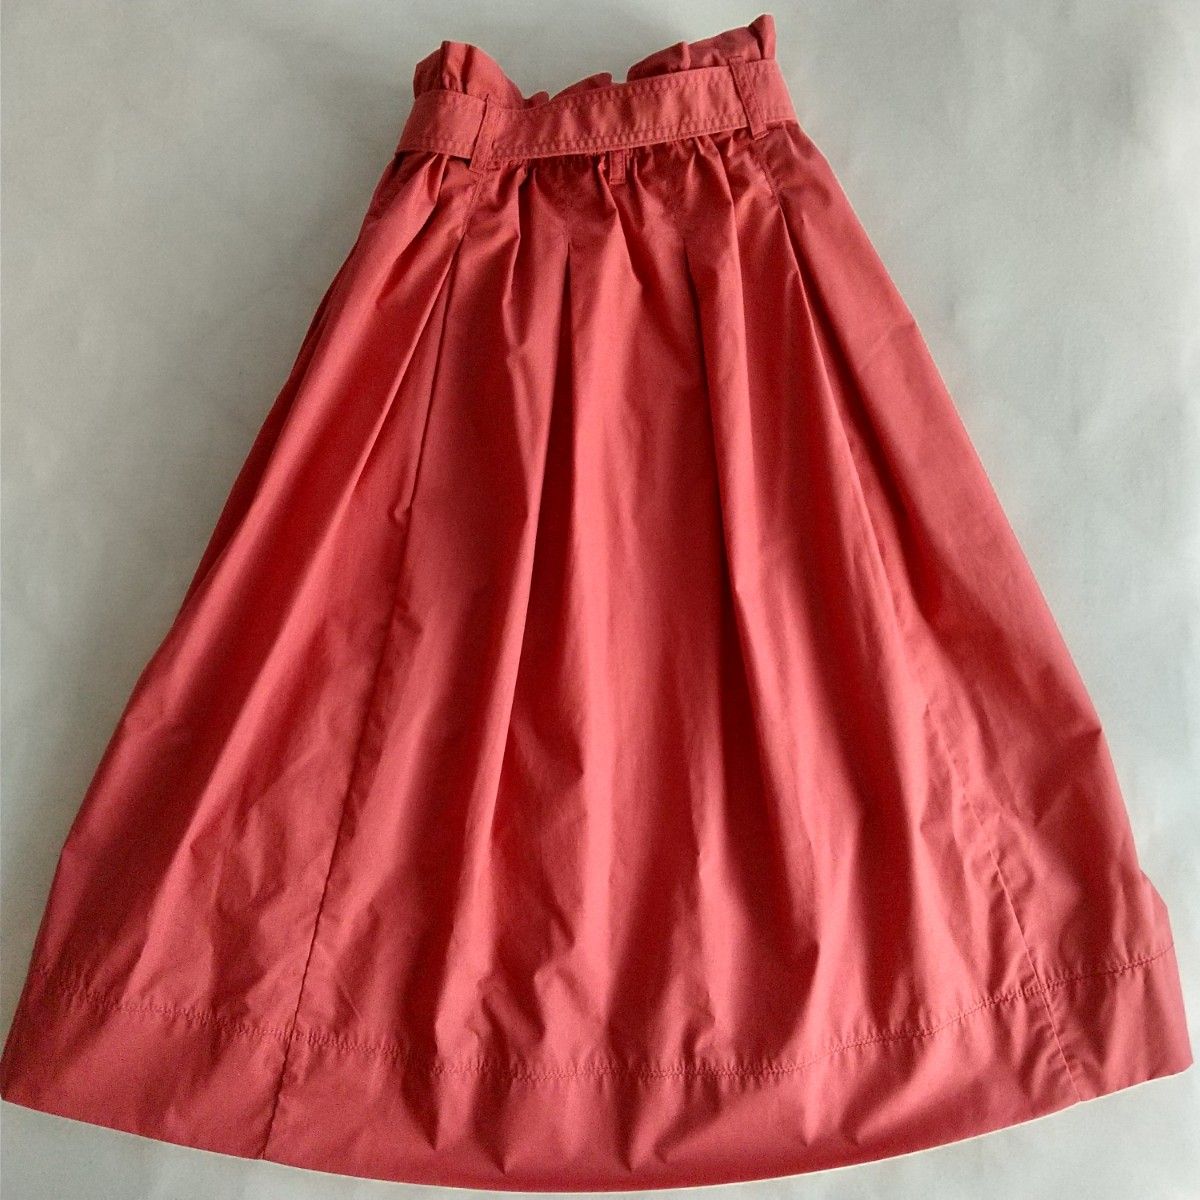 ユニクロ ハイウエスト ベルテッドフレアミディスカート 赤 オレンジ  Sサイズ リボンベルト フレアスカート 